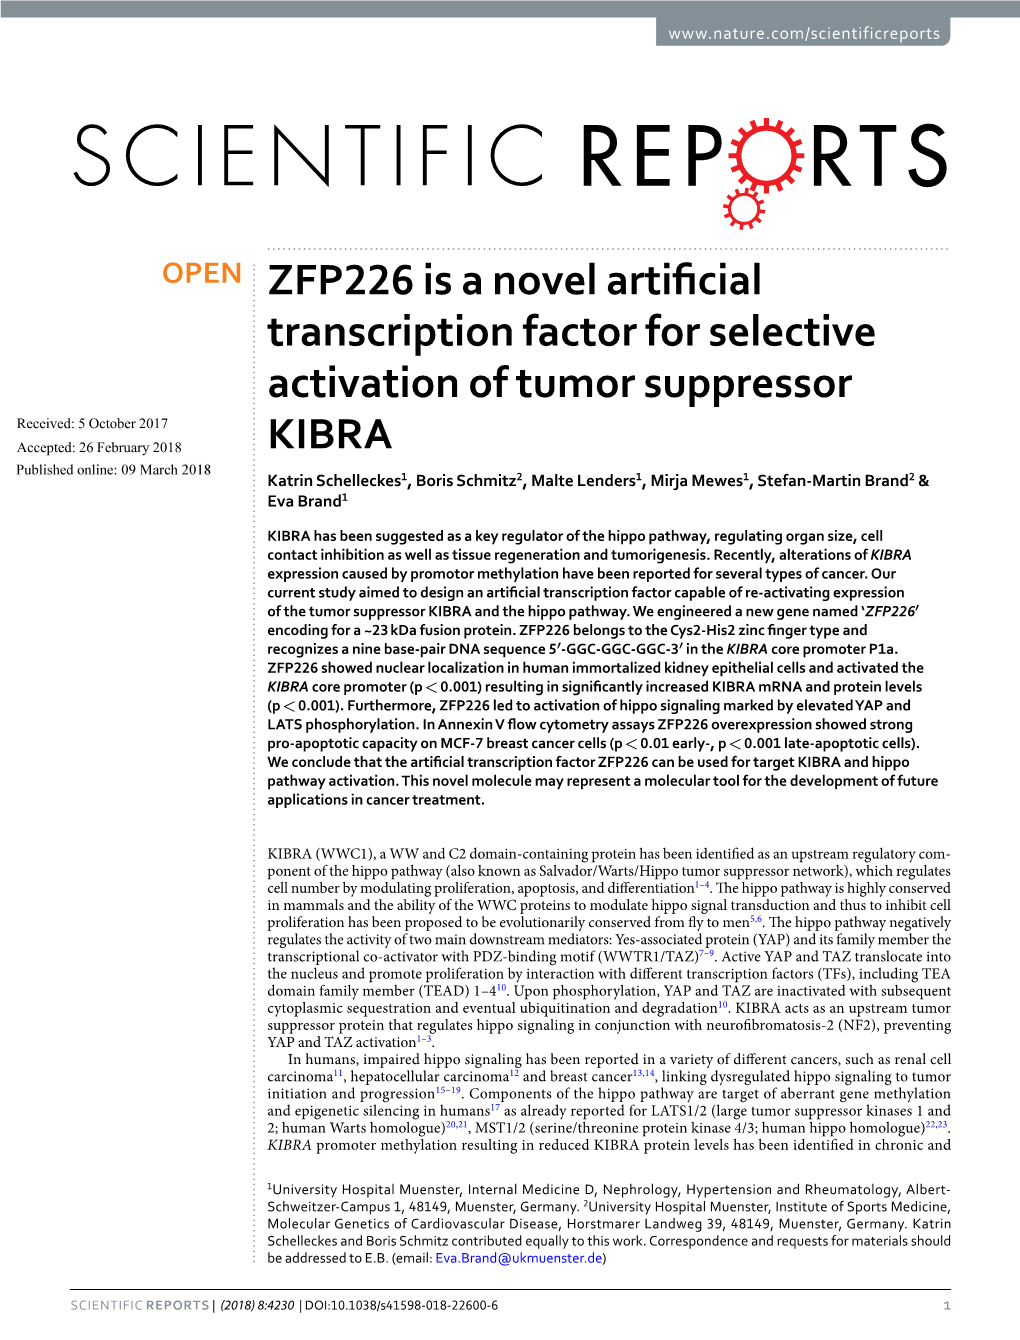 ZFP226 Is a Novel Artificial Transcription Factor for Selective